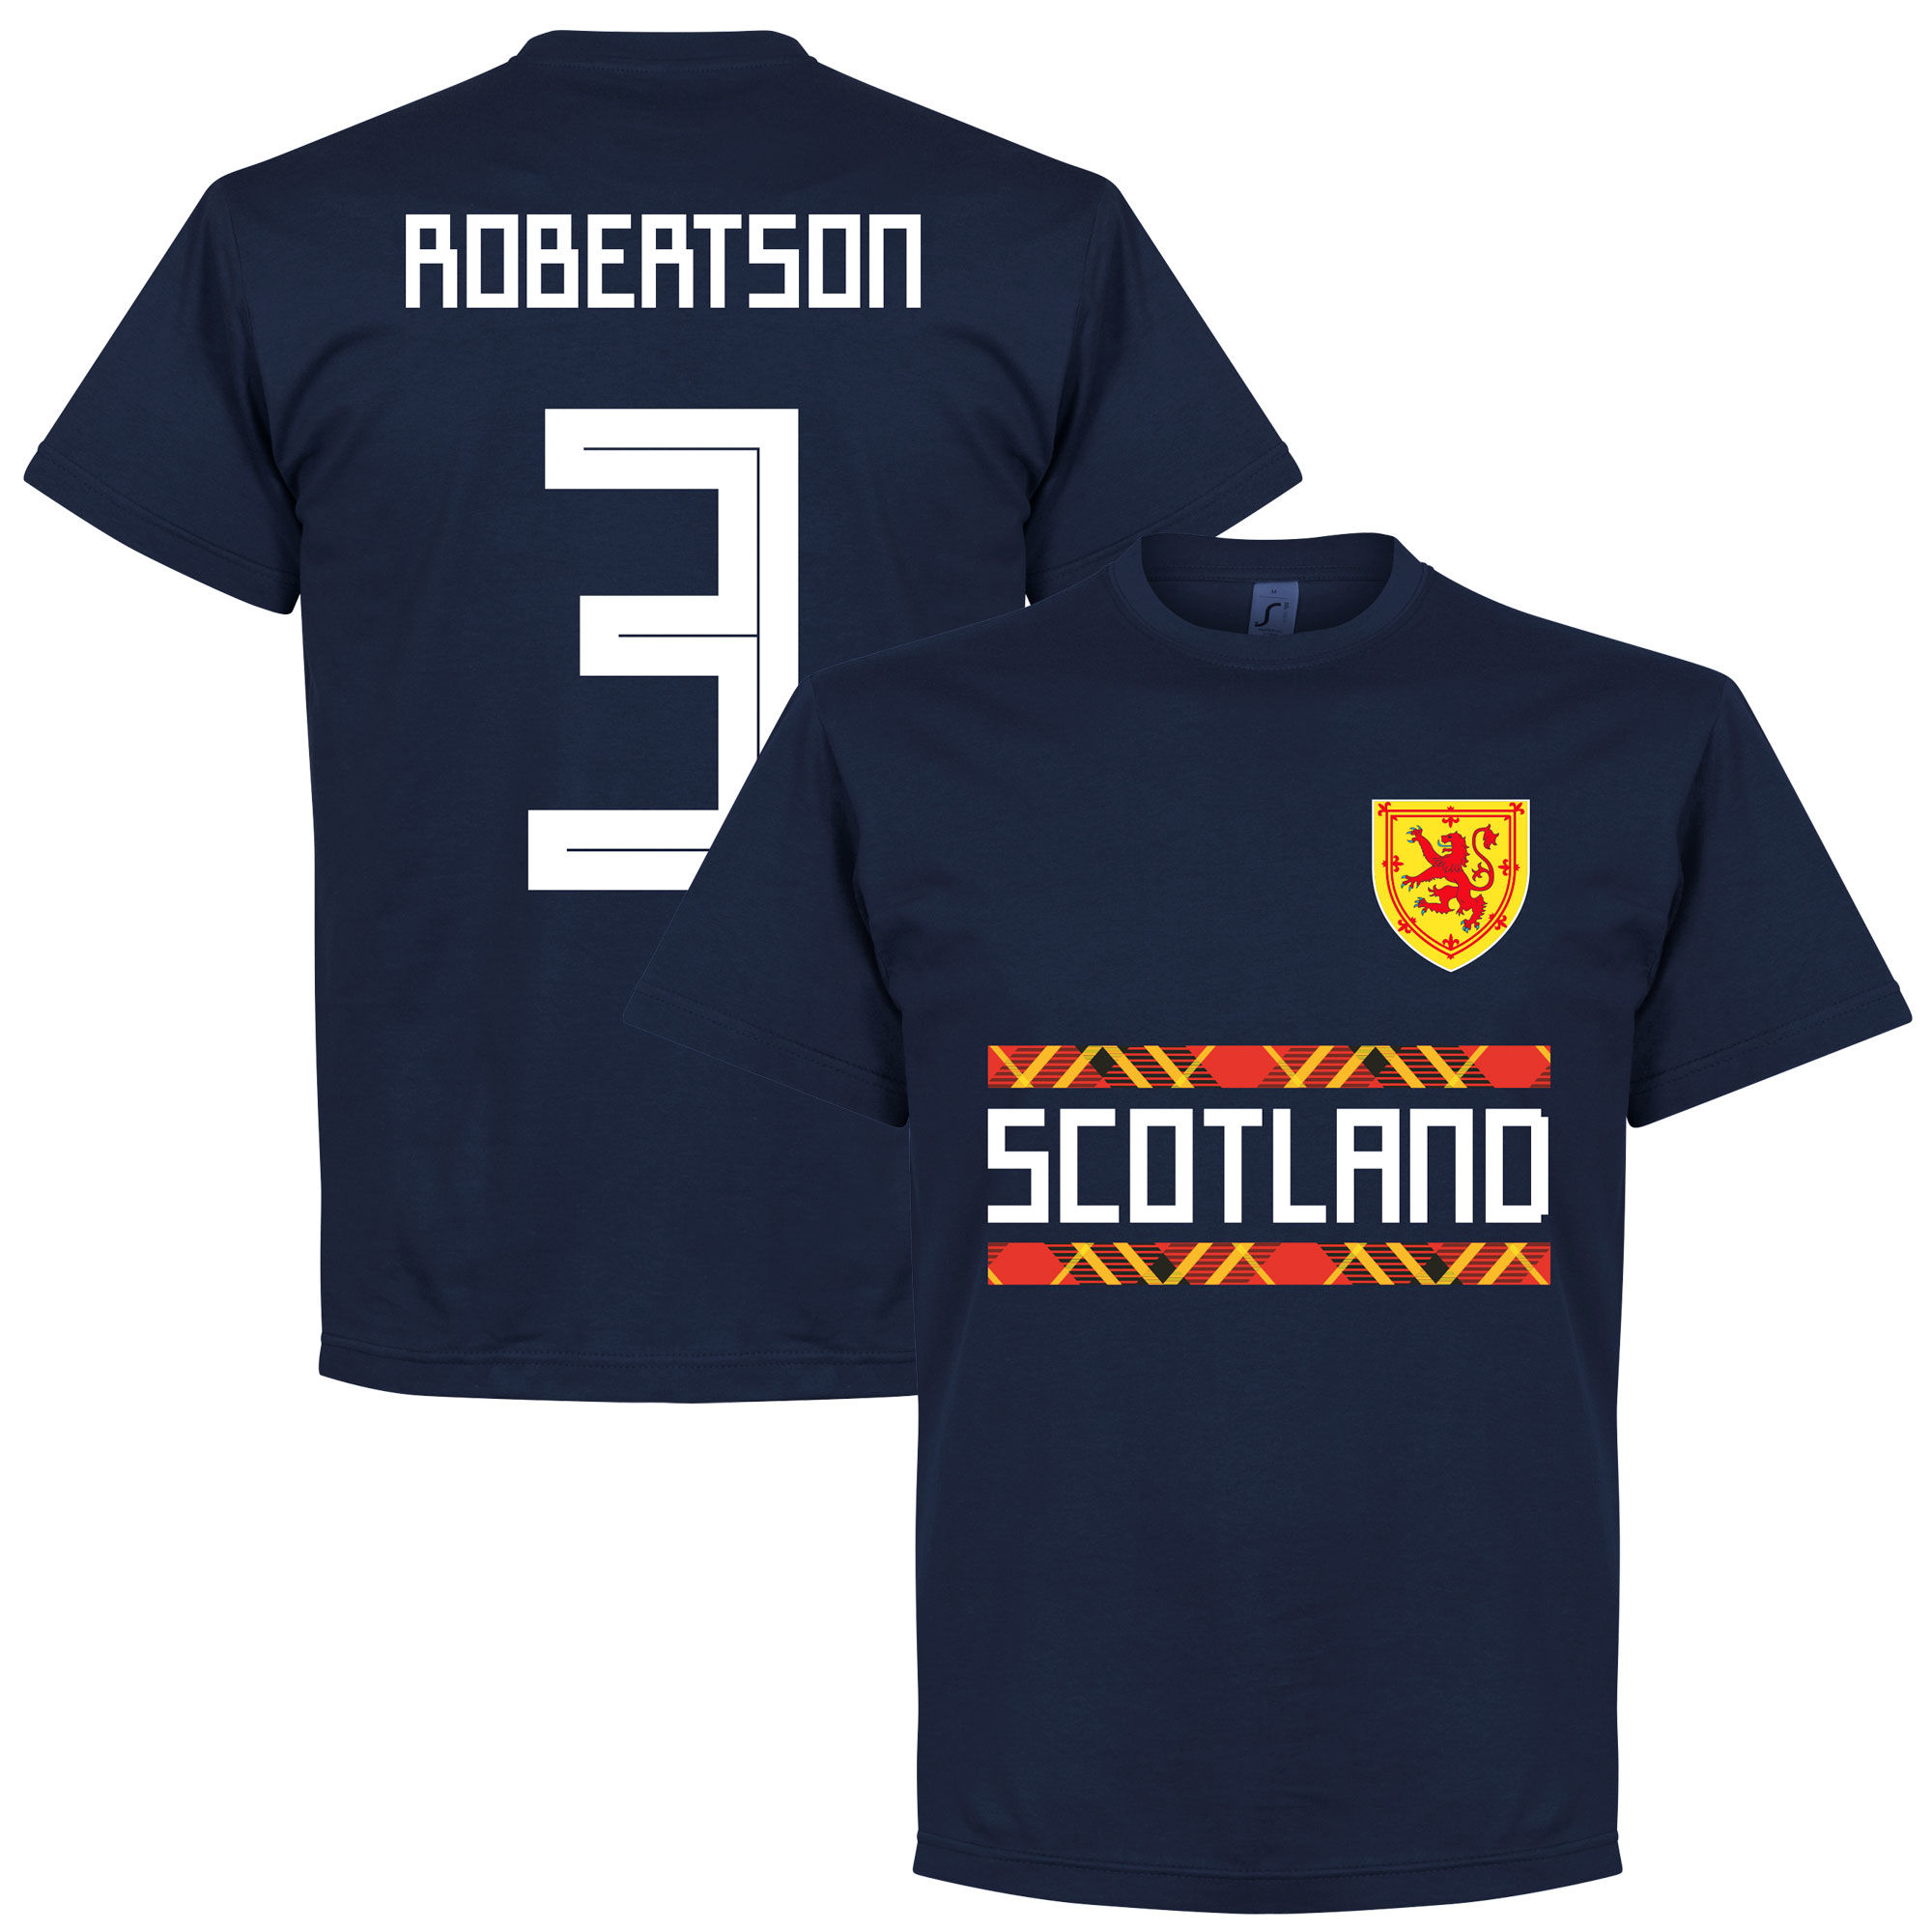 Skotsko - Tričko - Andrew Robertson, číslo 3, modré